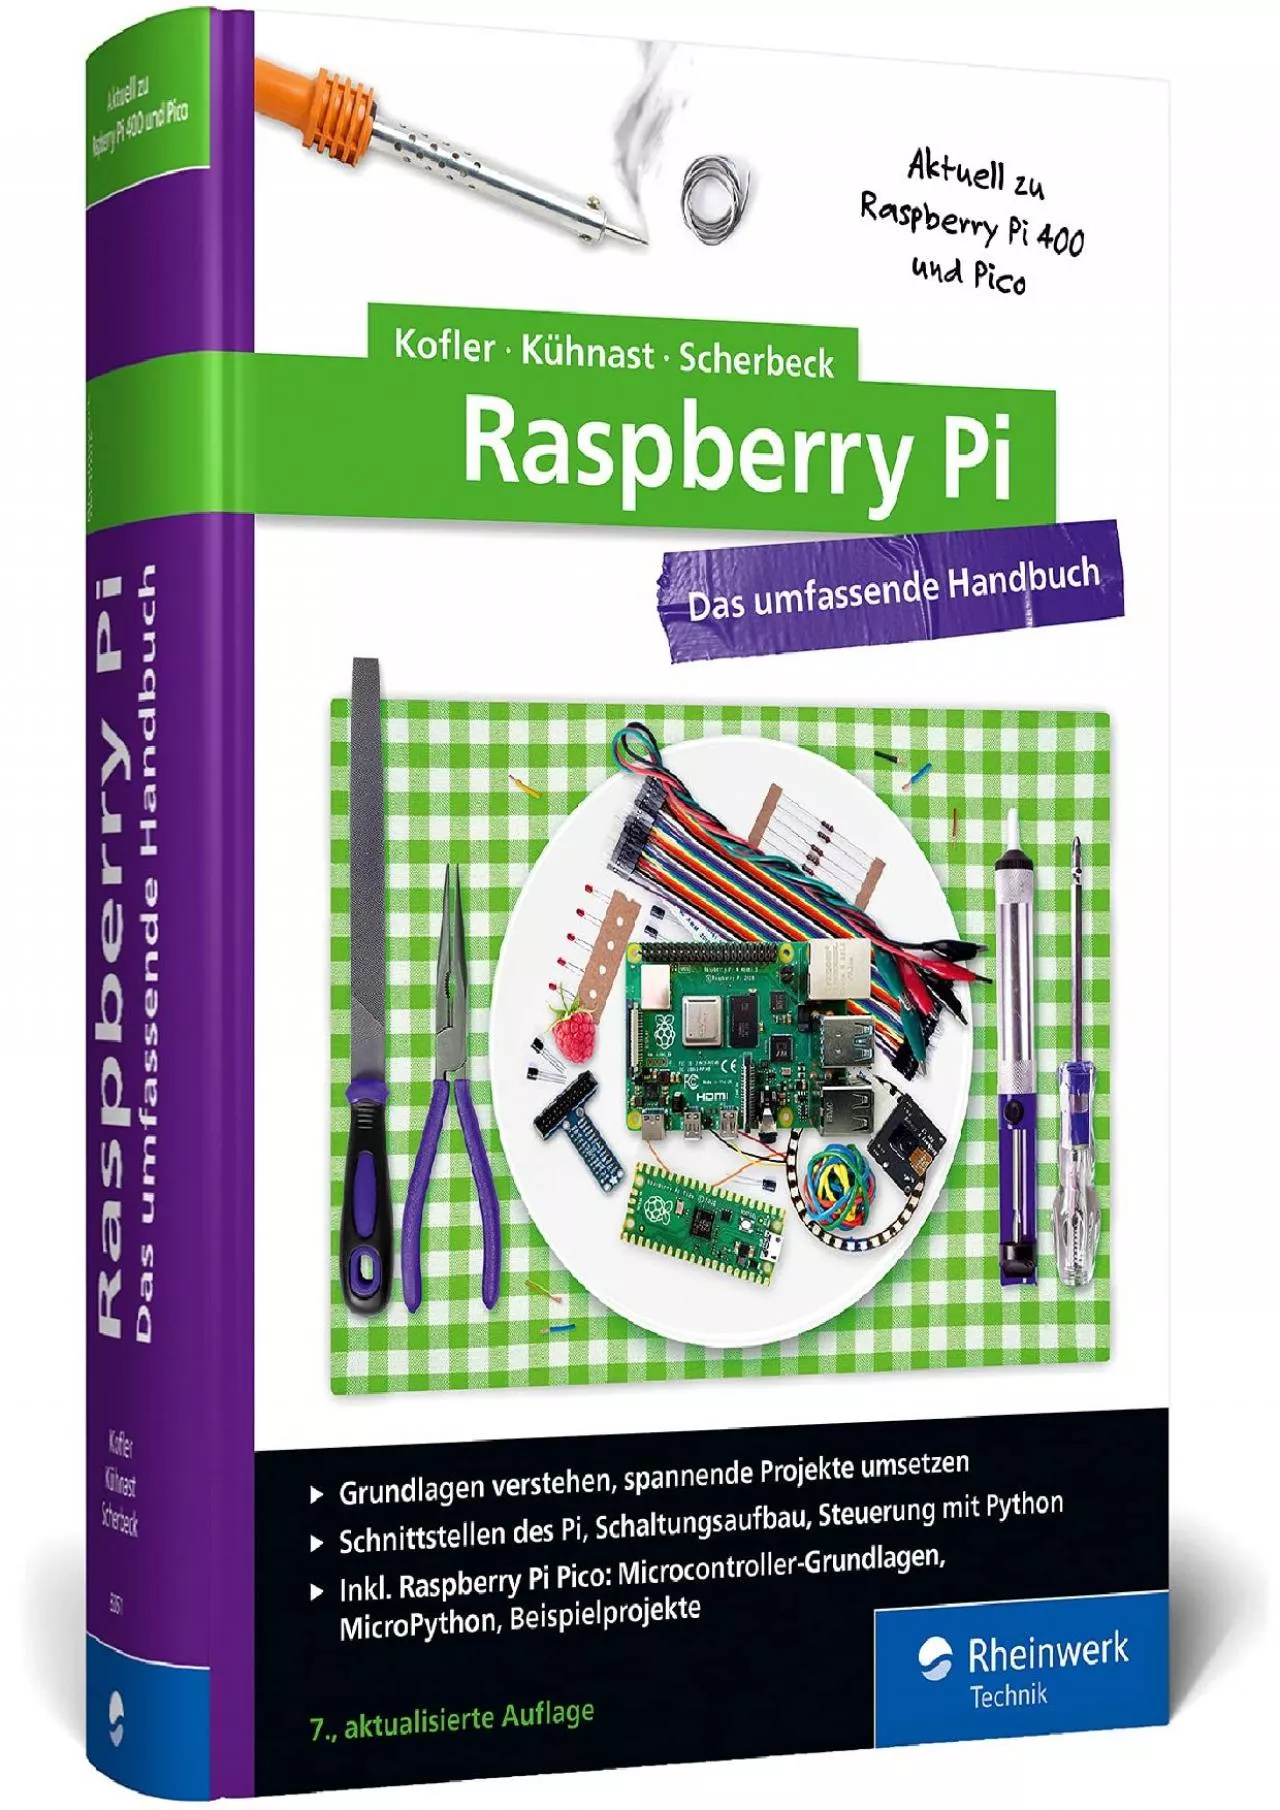 [DOWLOAD]-Raspberry Pi Das umfassende Handbuch. Über 1.000 Seiten in Farbe. Mit Einstieg